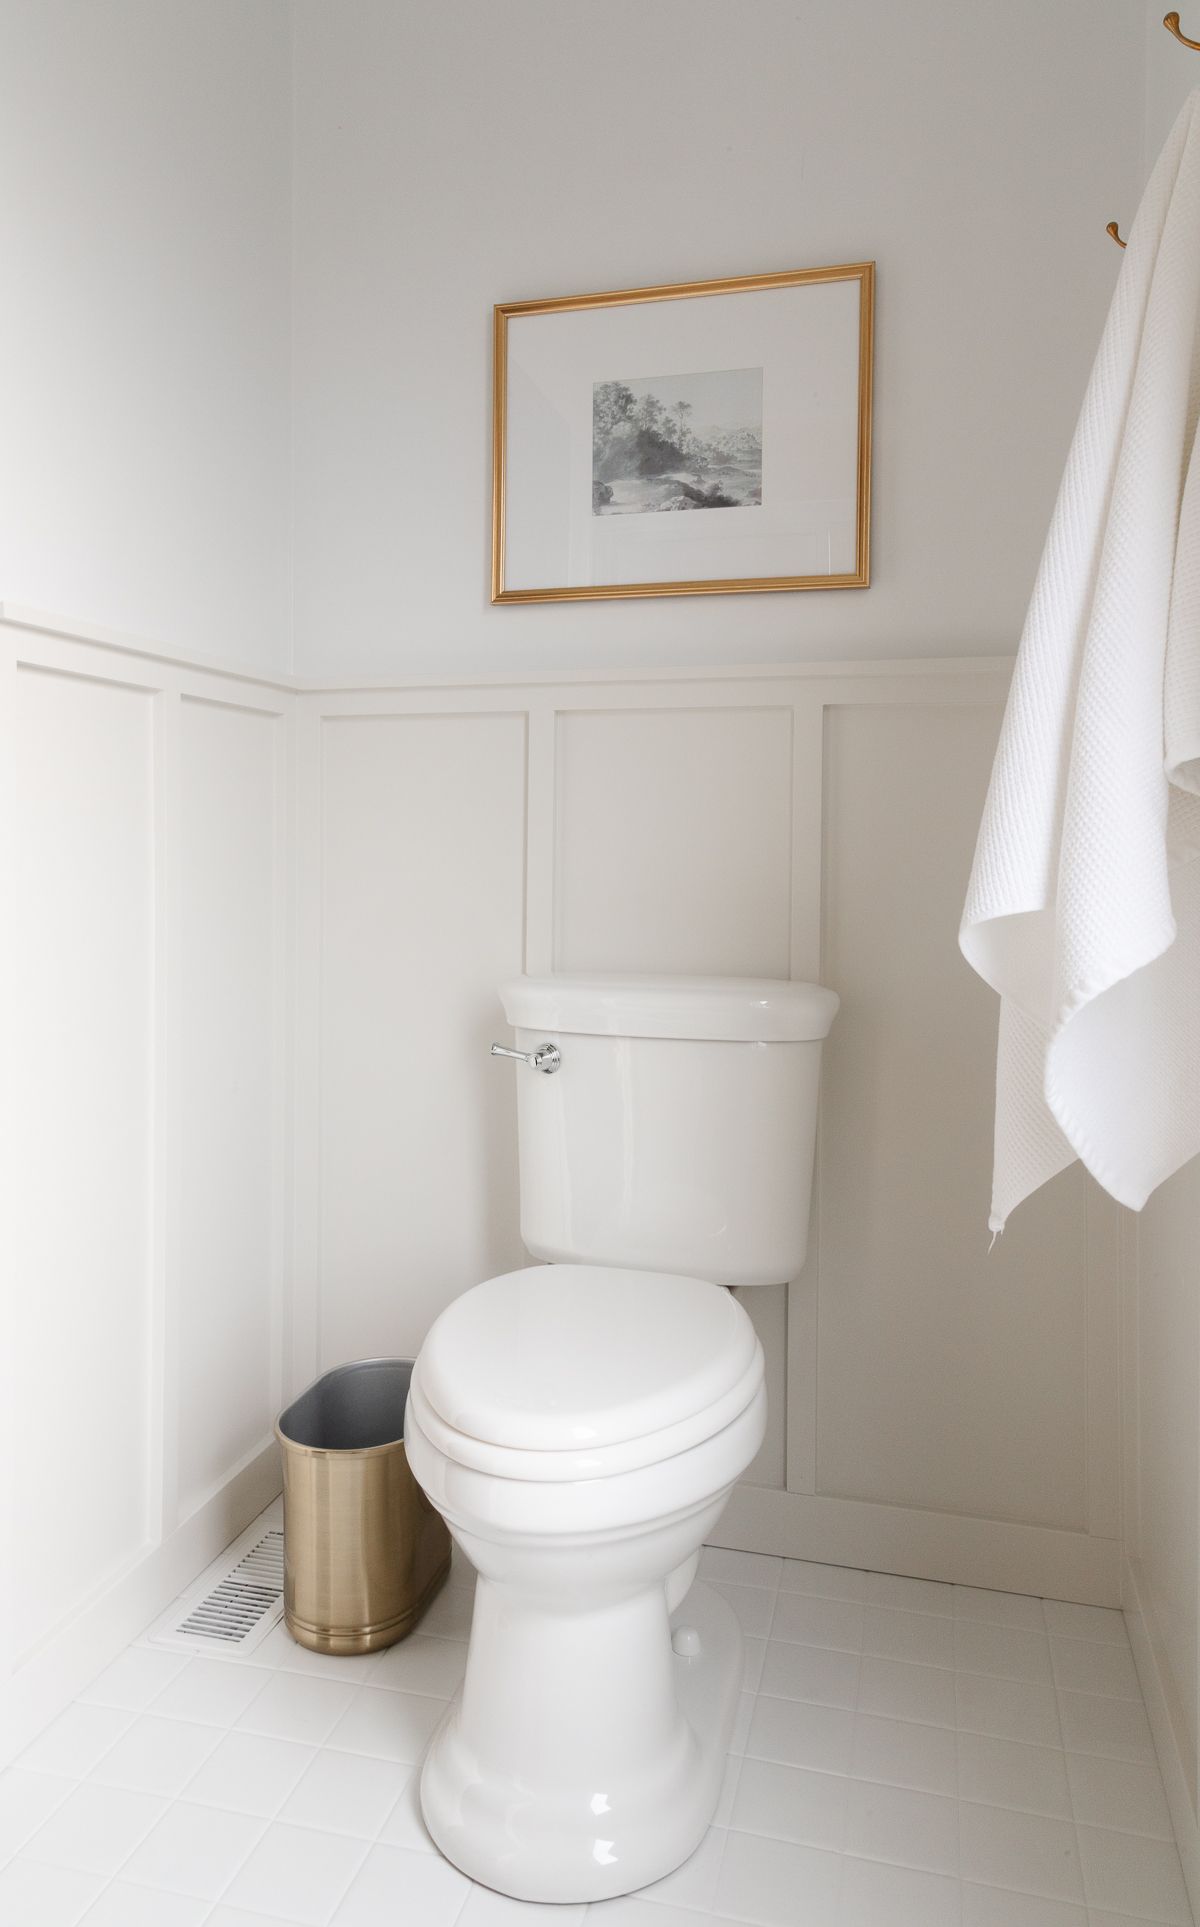 一间白色和灰色的浴室，空间周围有护壁板，上面是本杰明摩尔(Benjamin Moore)装饰公司的白色涂料。